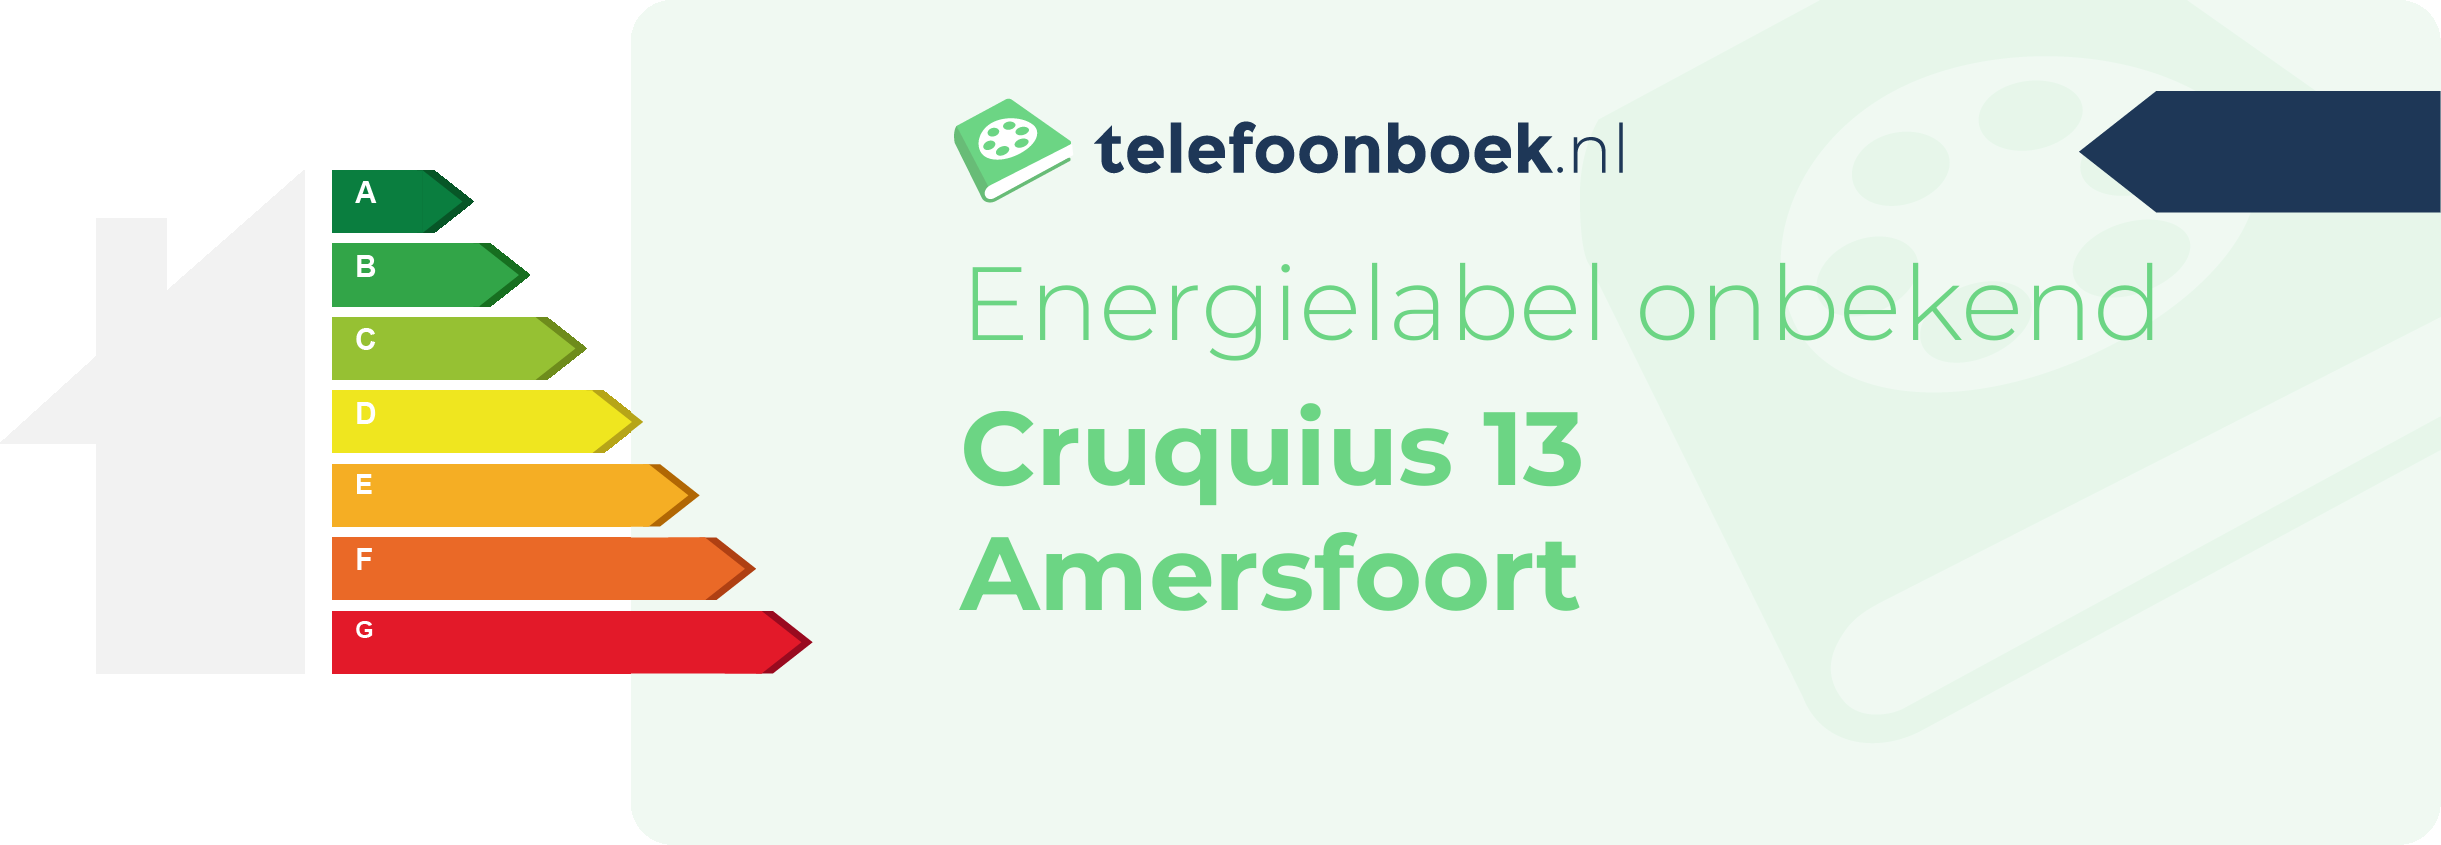 Energielabel Cruquius 13 Amersfoort